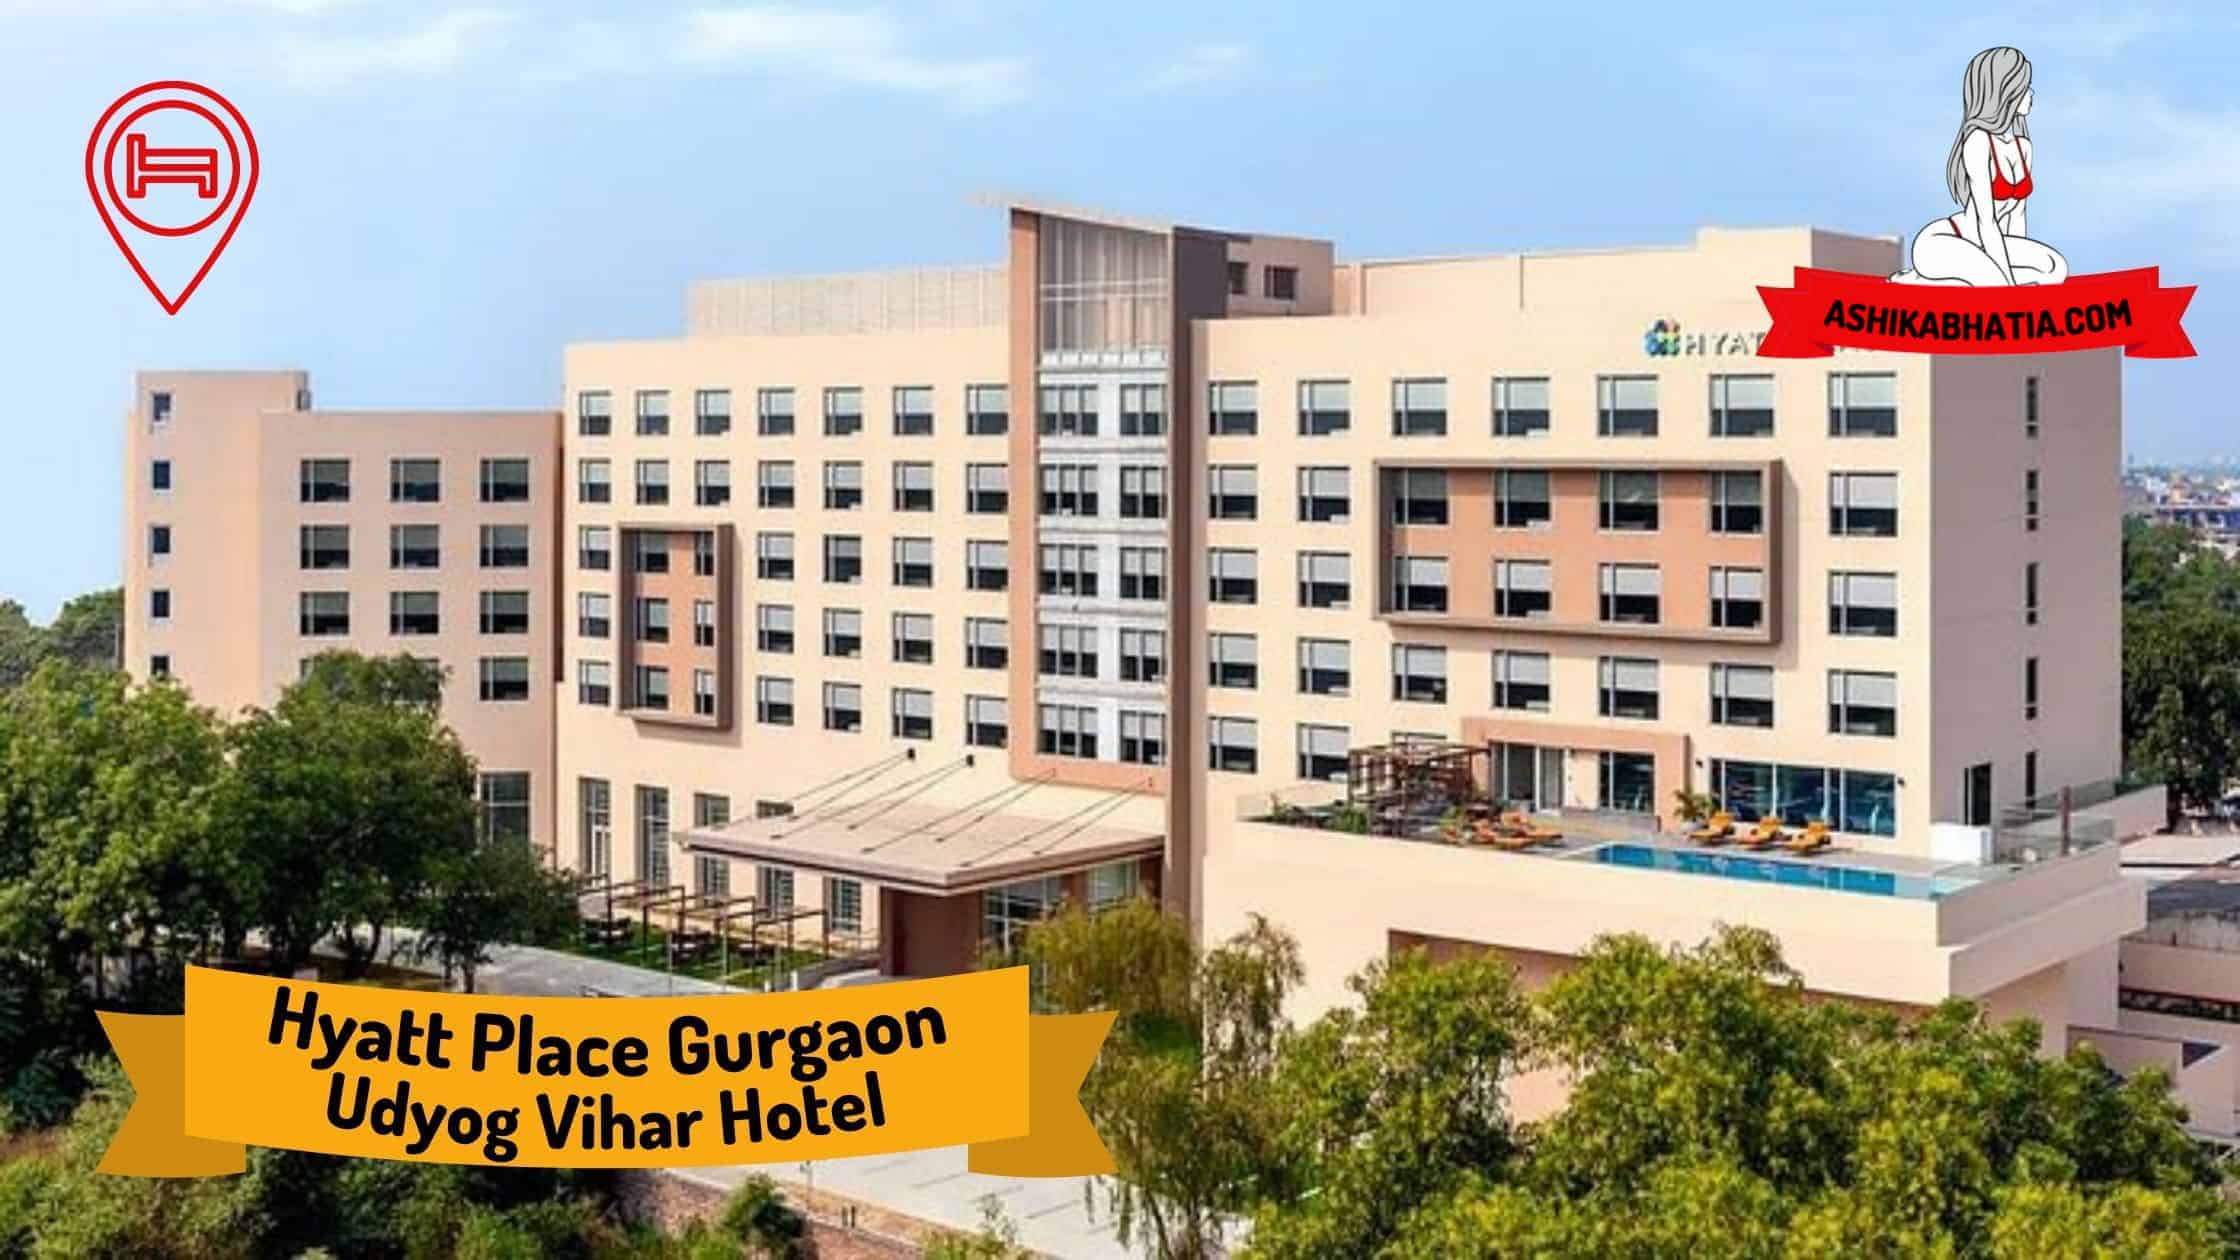 Hyatt Place Gurgaon Udyog Vihar Hotel Escorts